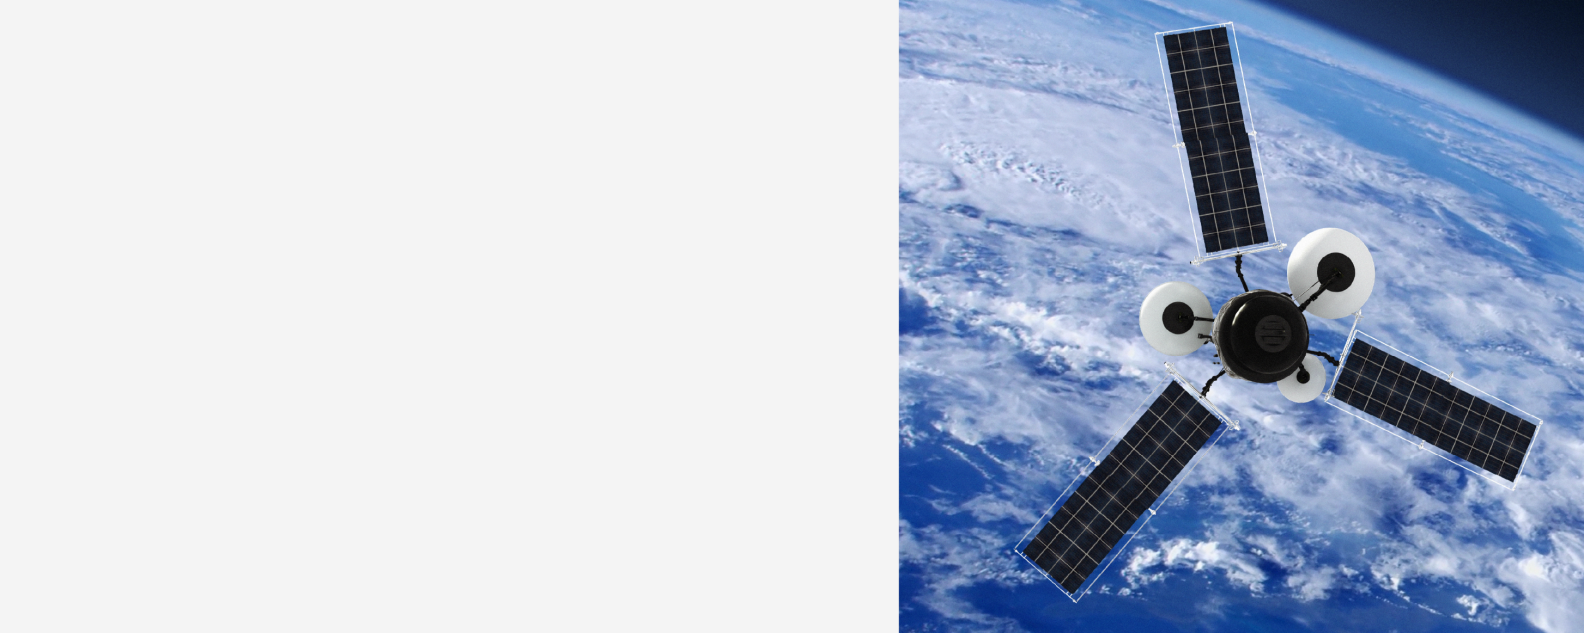 GPS ou satellite météorologique en orbite autour de la Terre